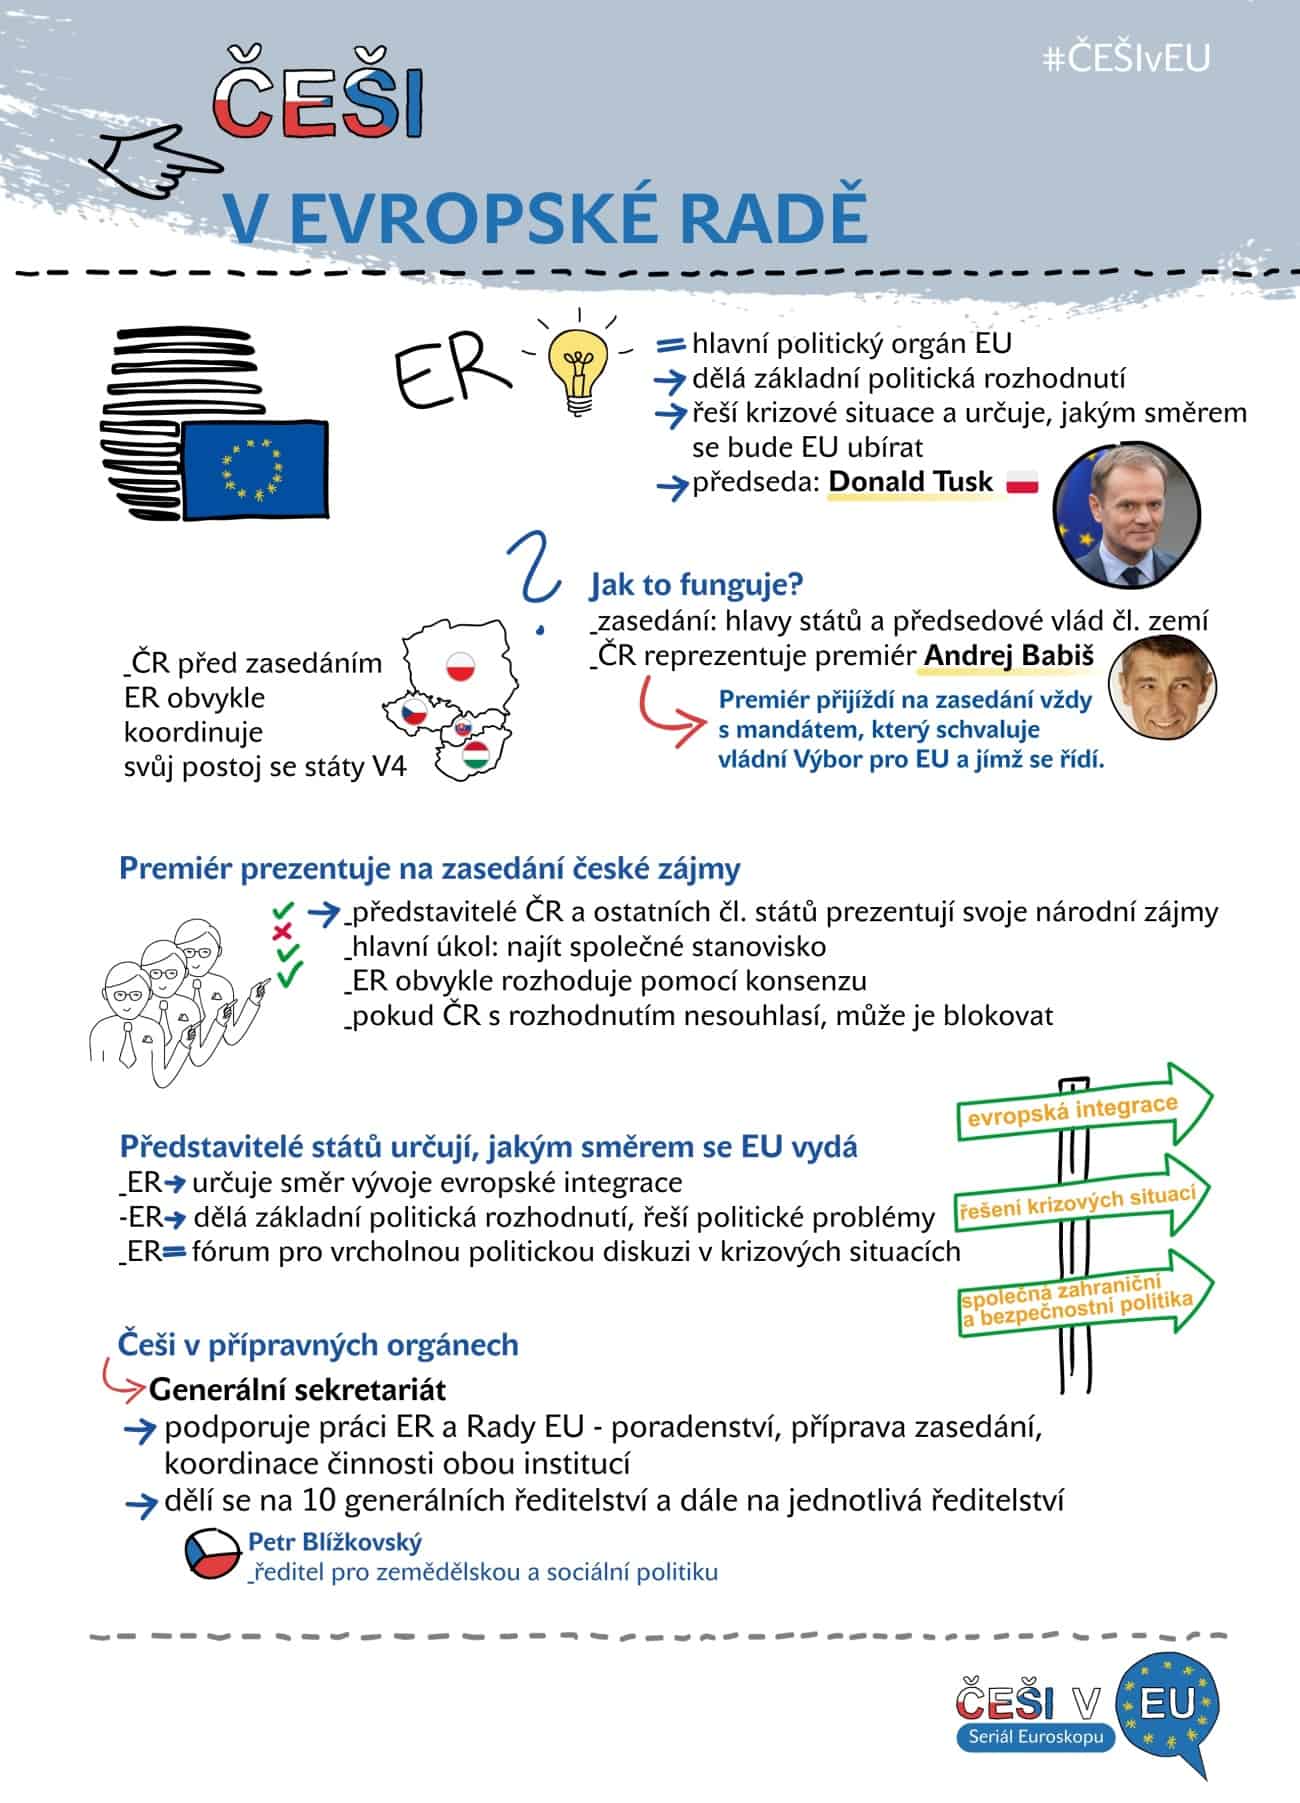 Češi v EU 3, infografika: Kristina Kvapilová 2018